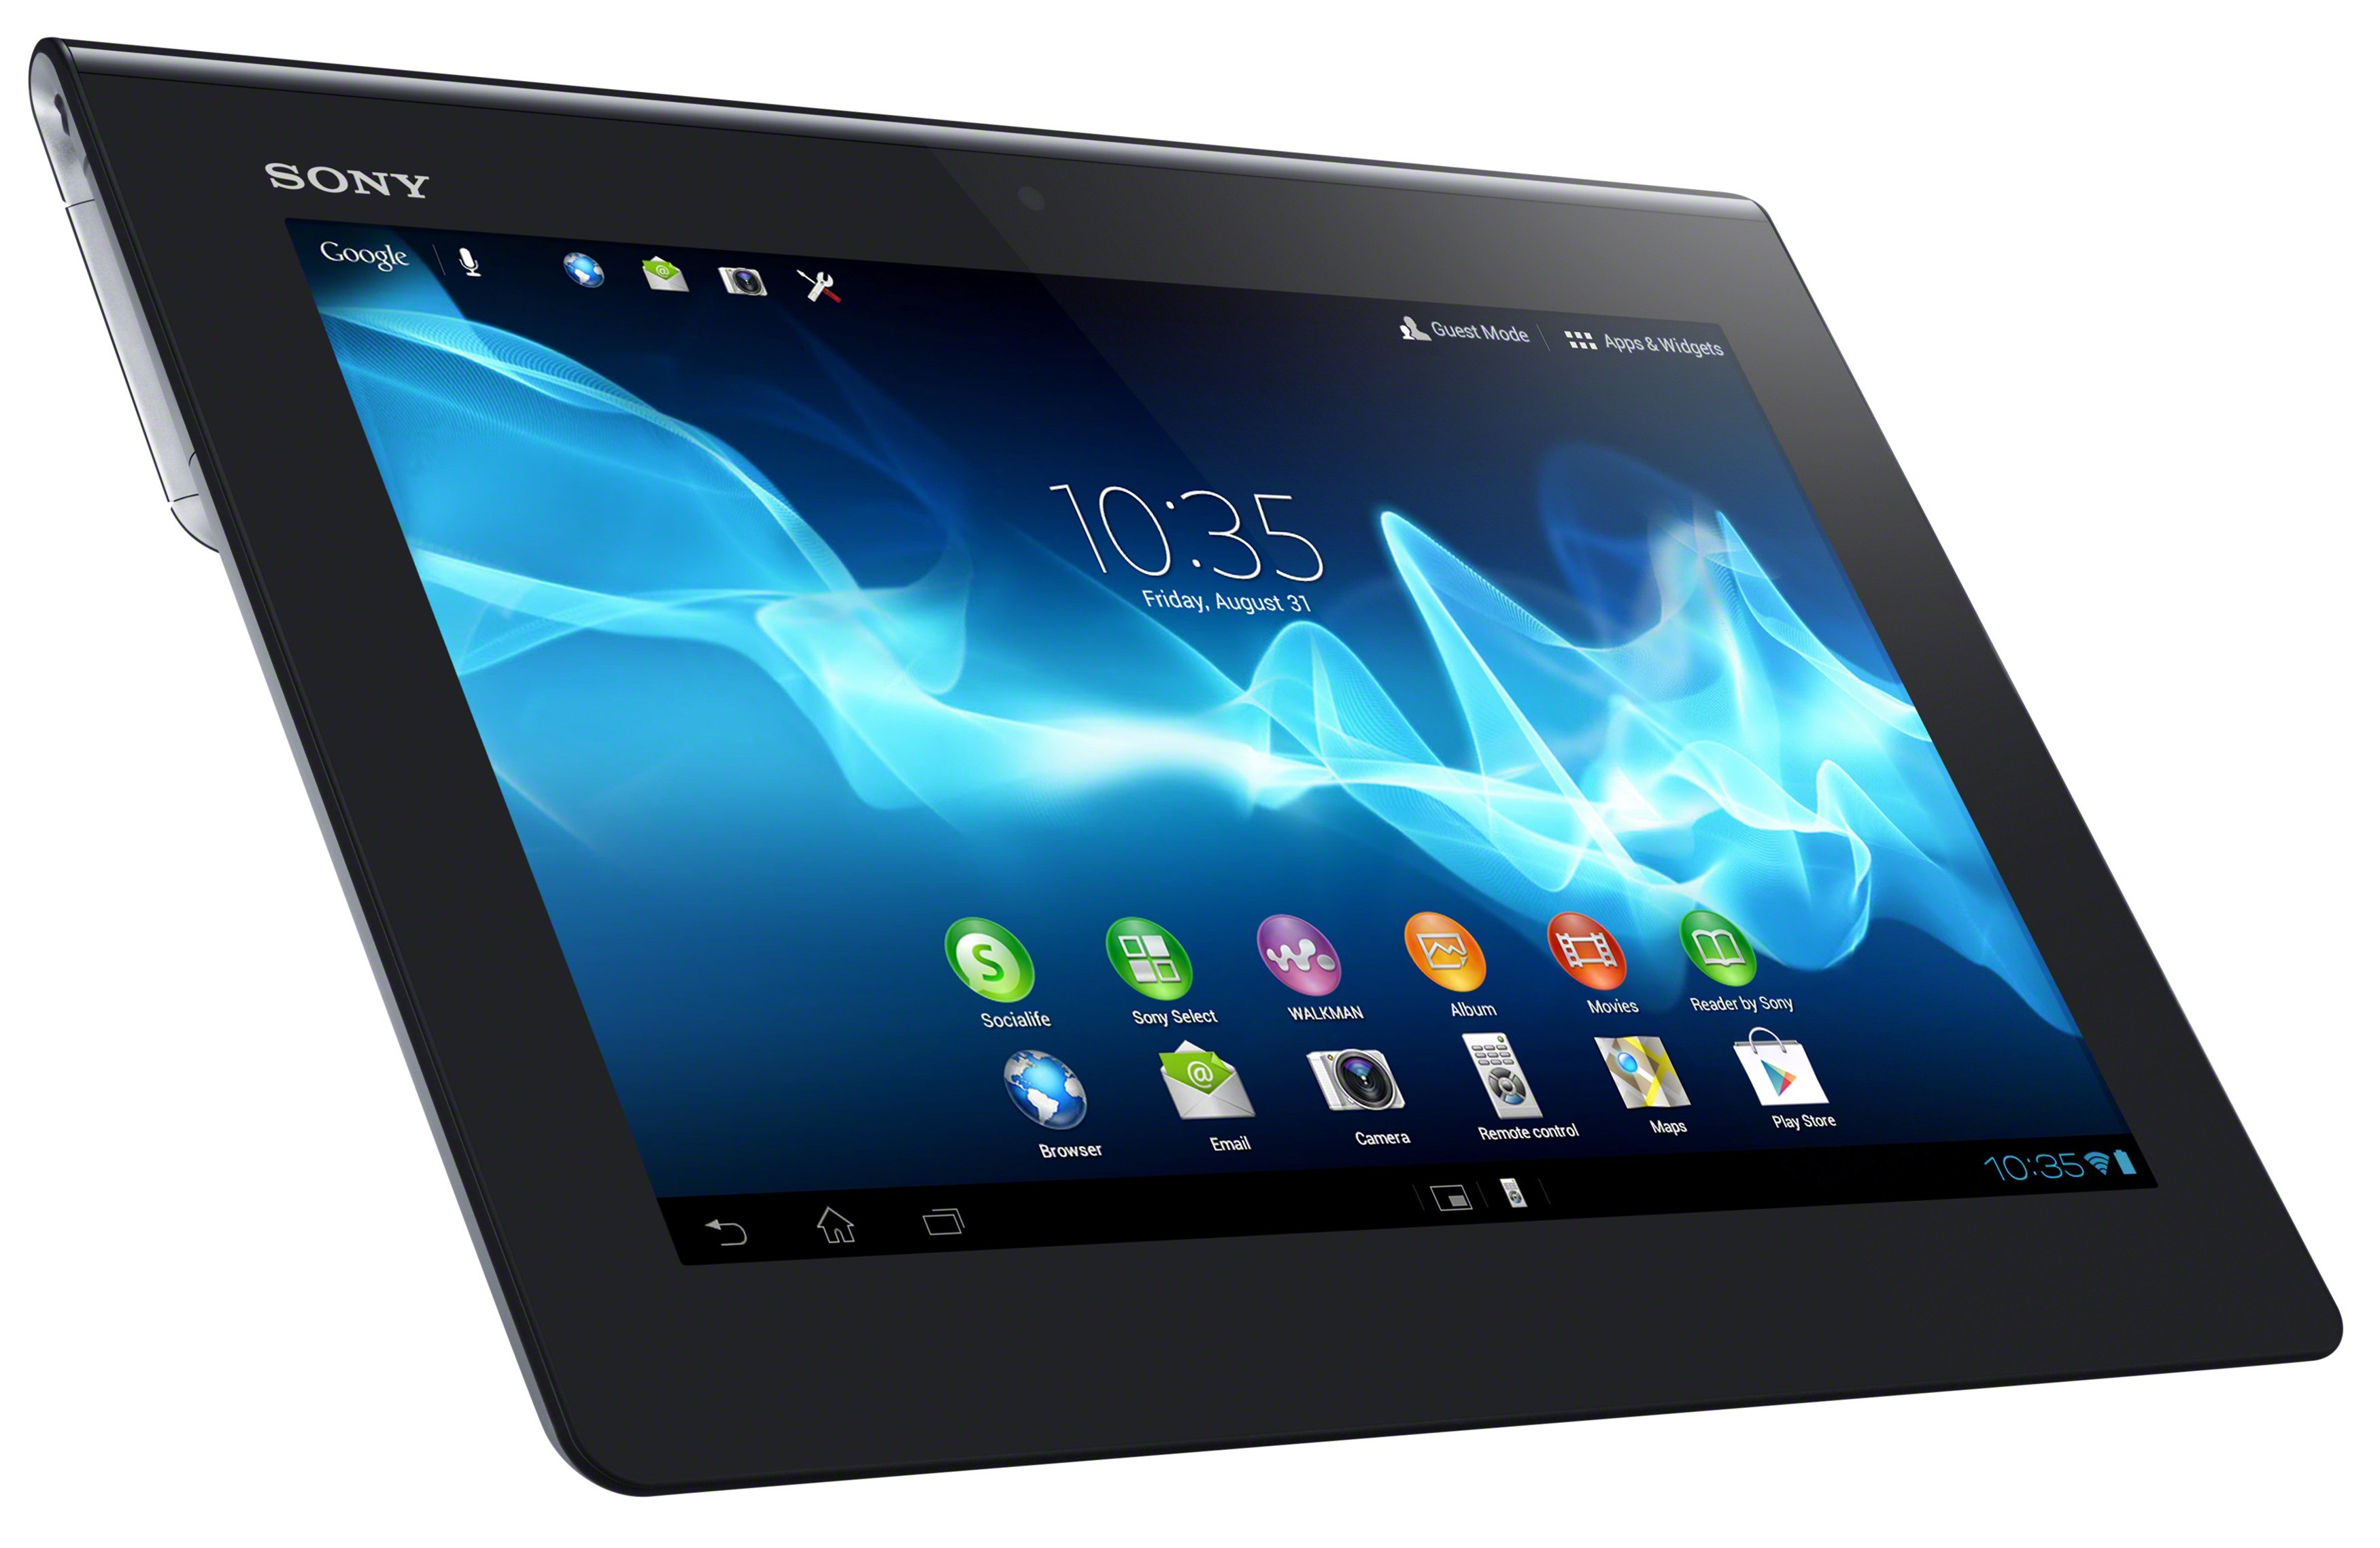 Xperia Tablet S: di nuovo in vendita da metà Novembre dopo i problemi legati all'impermeabilità